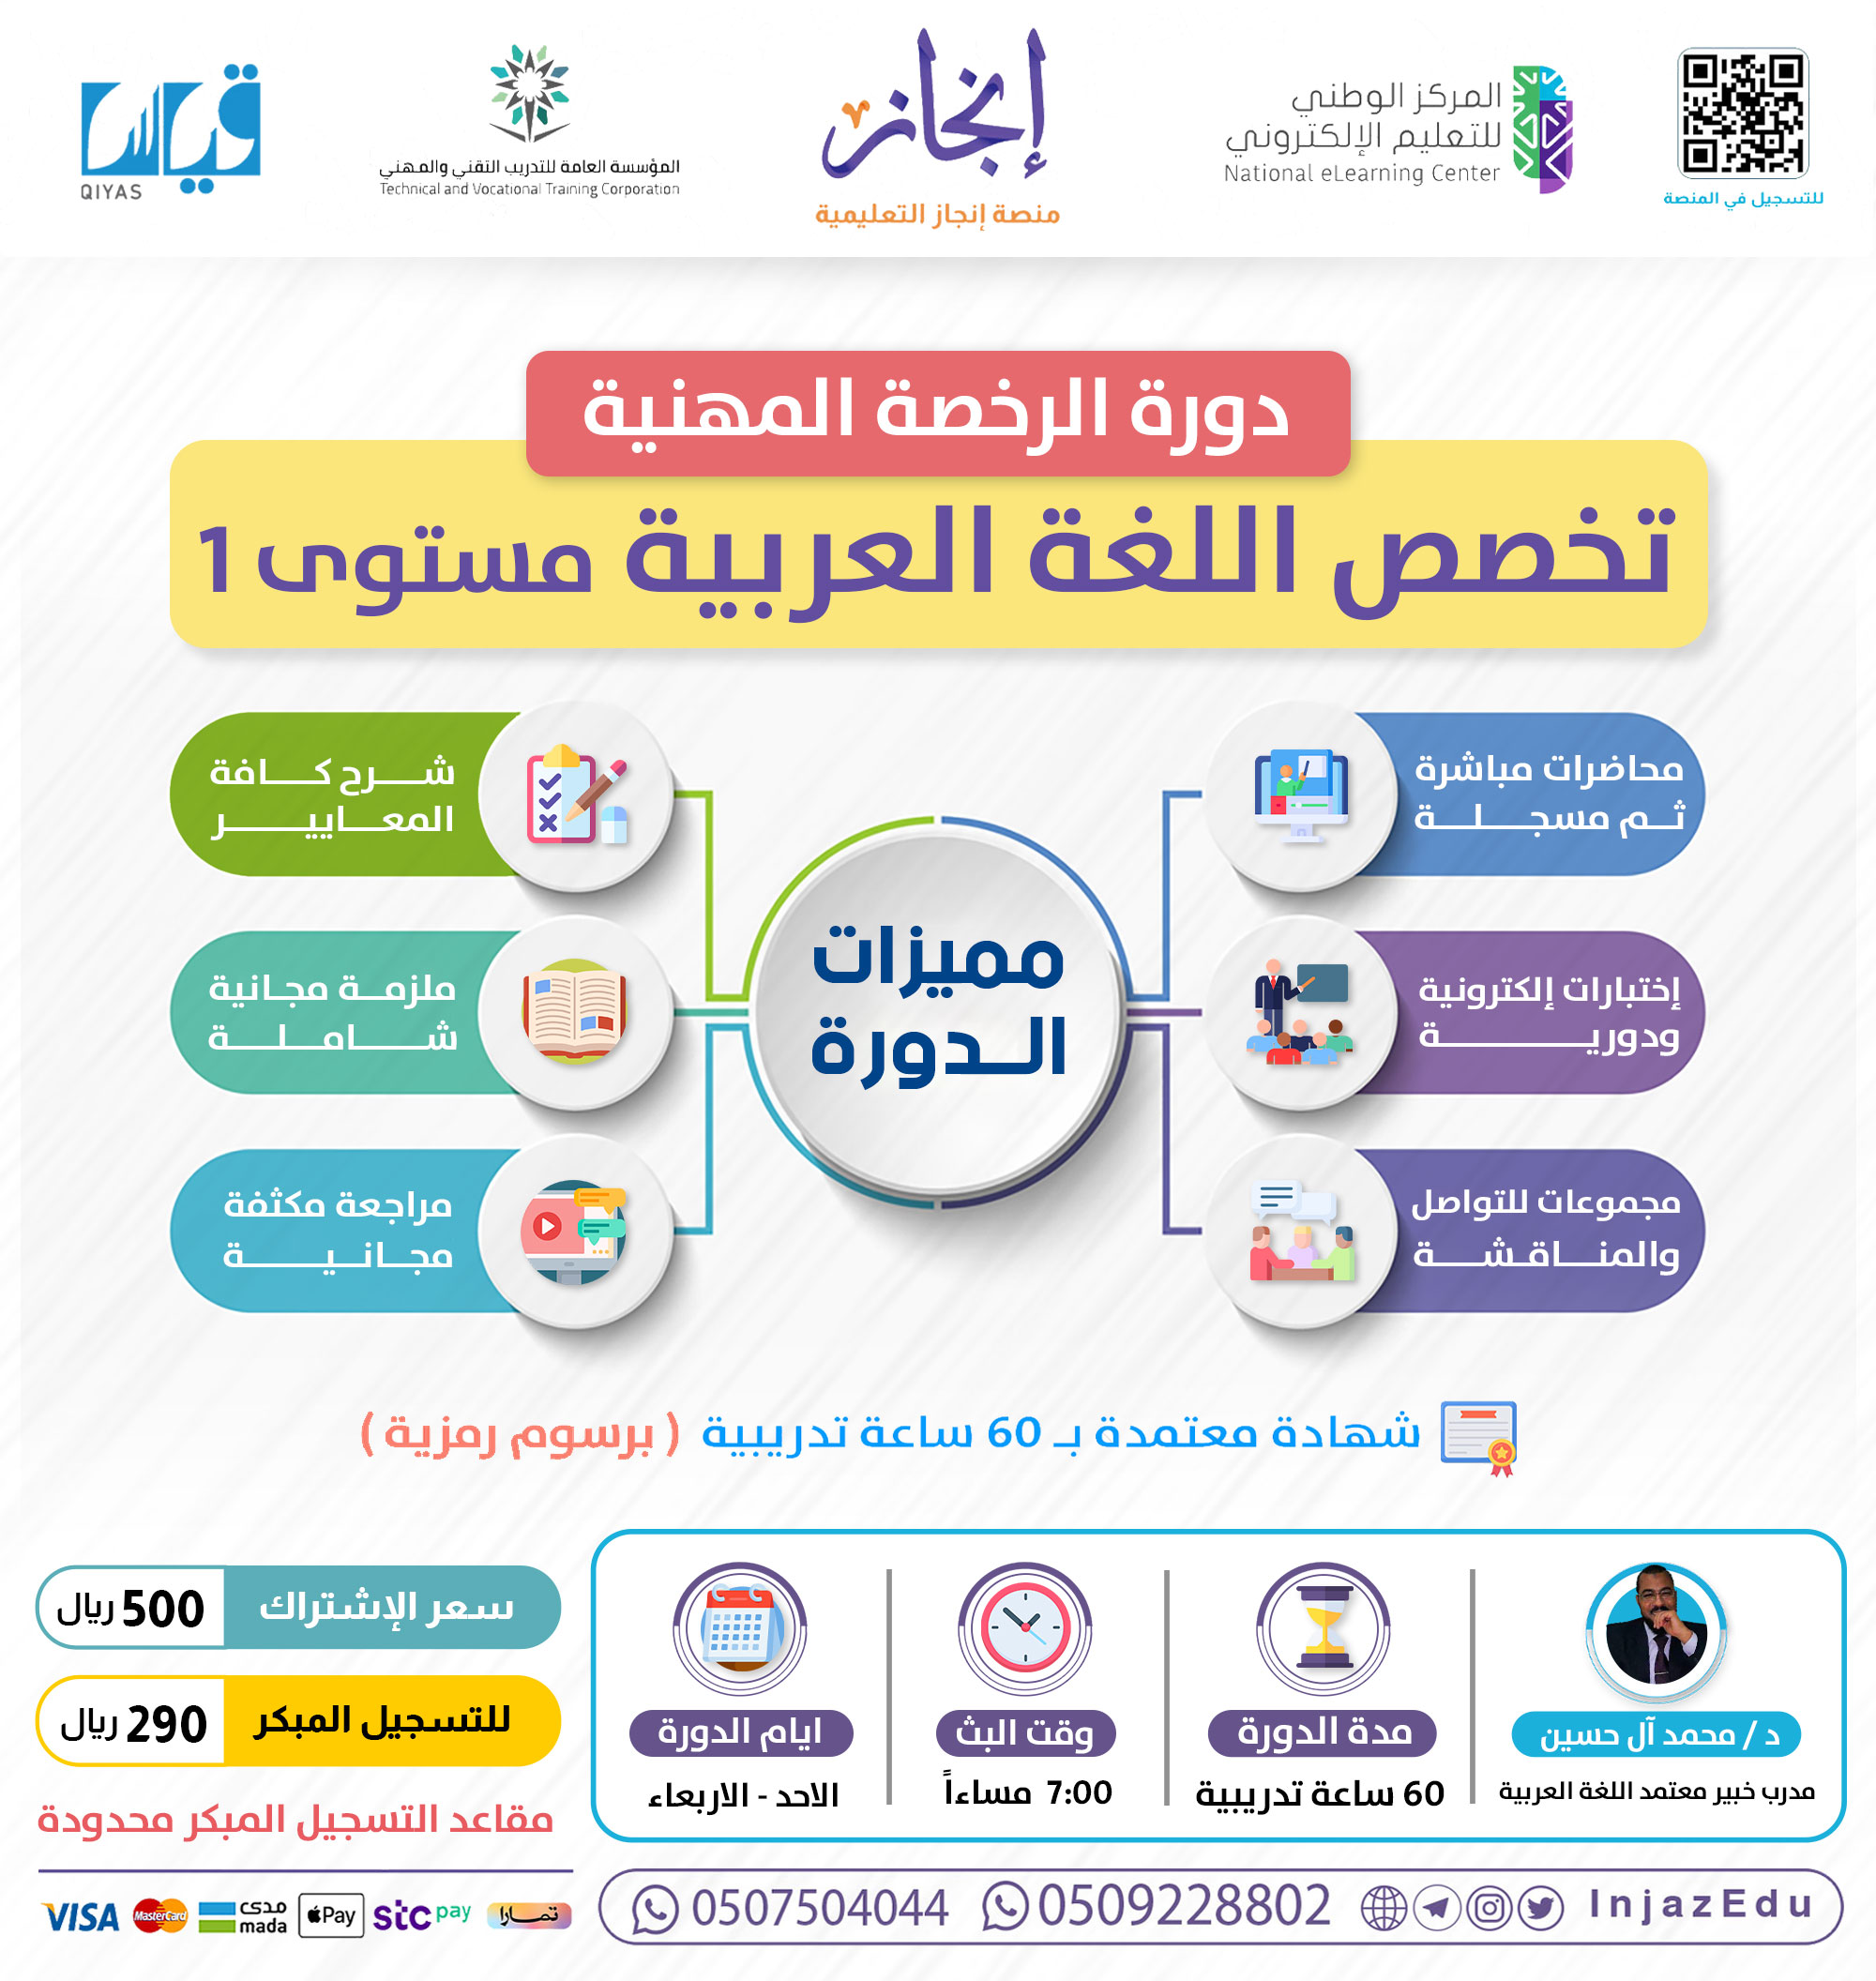 دورة الرخصة المهنية اللغة العربية (1)